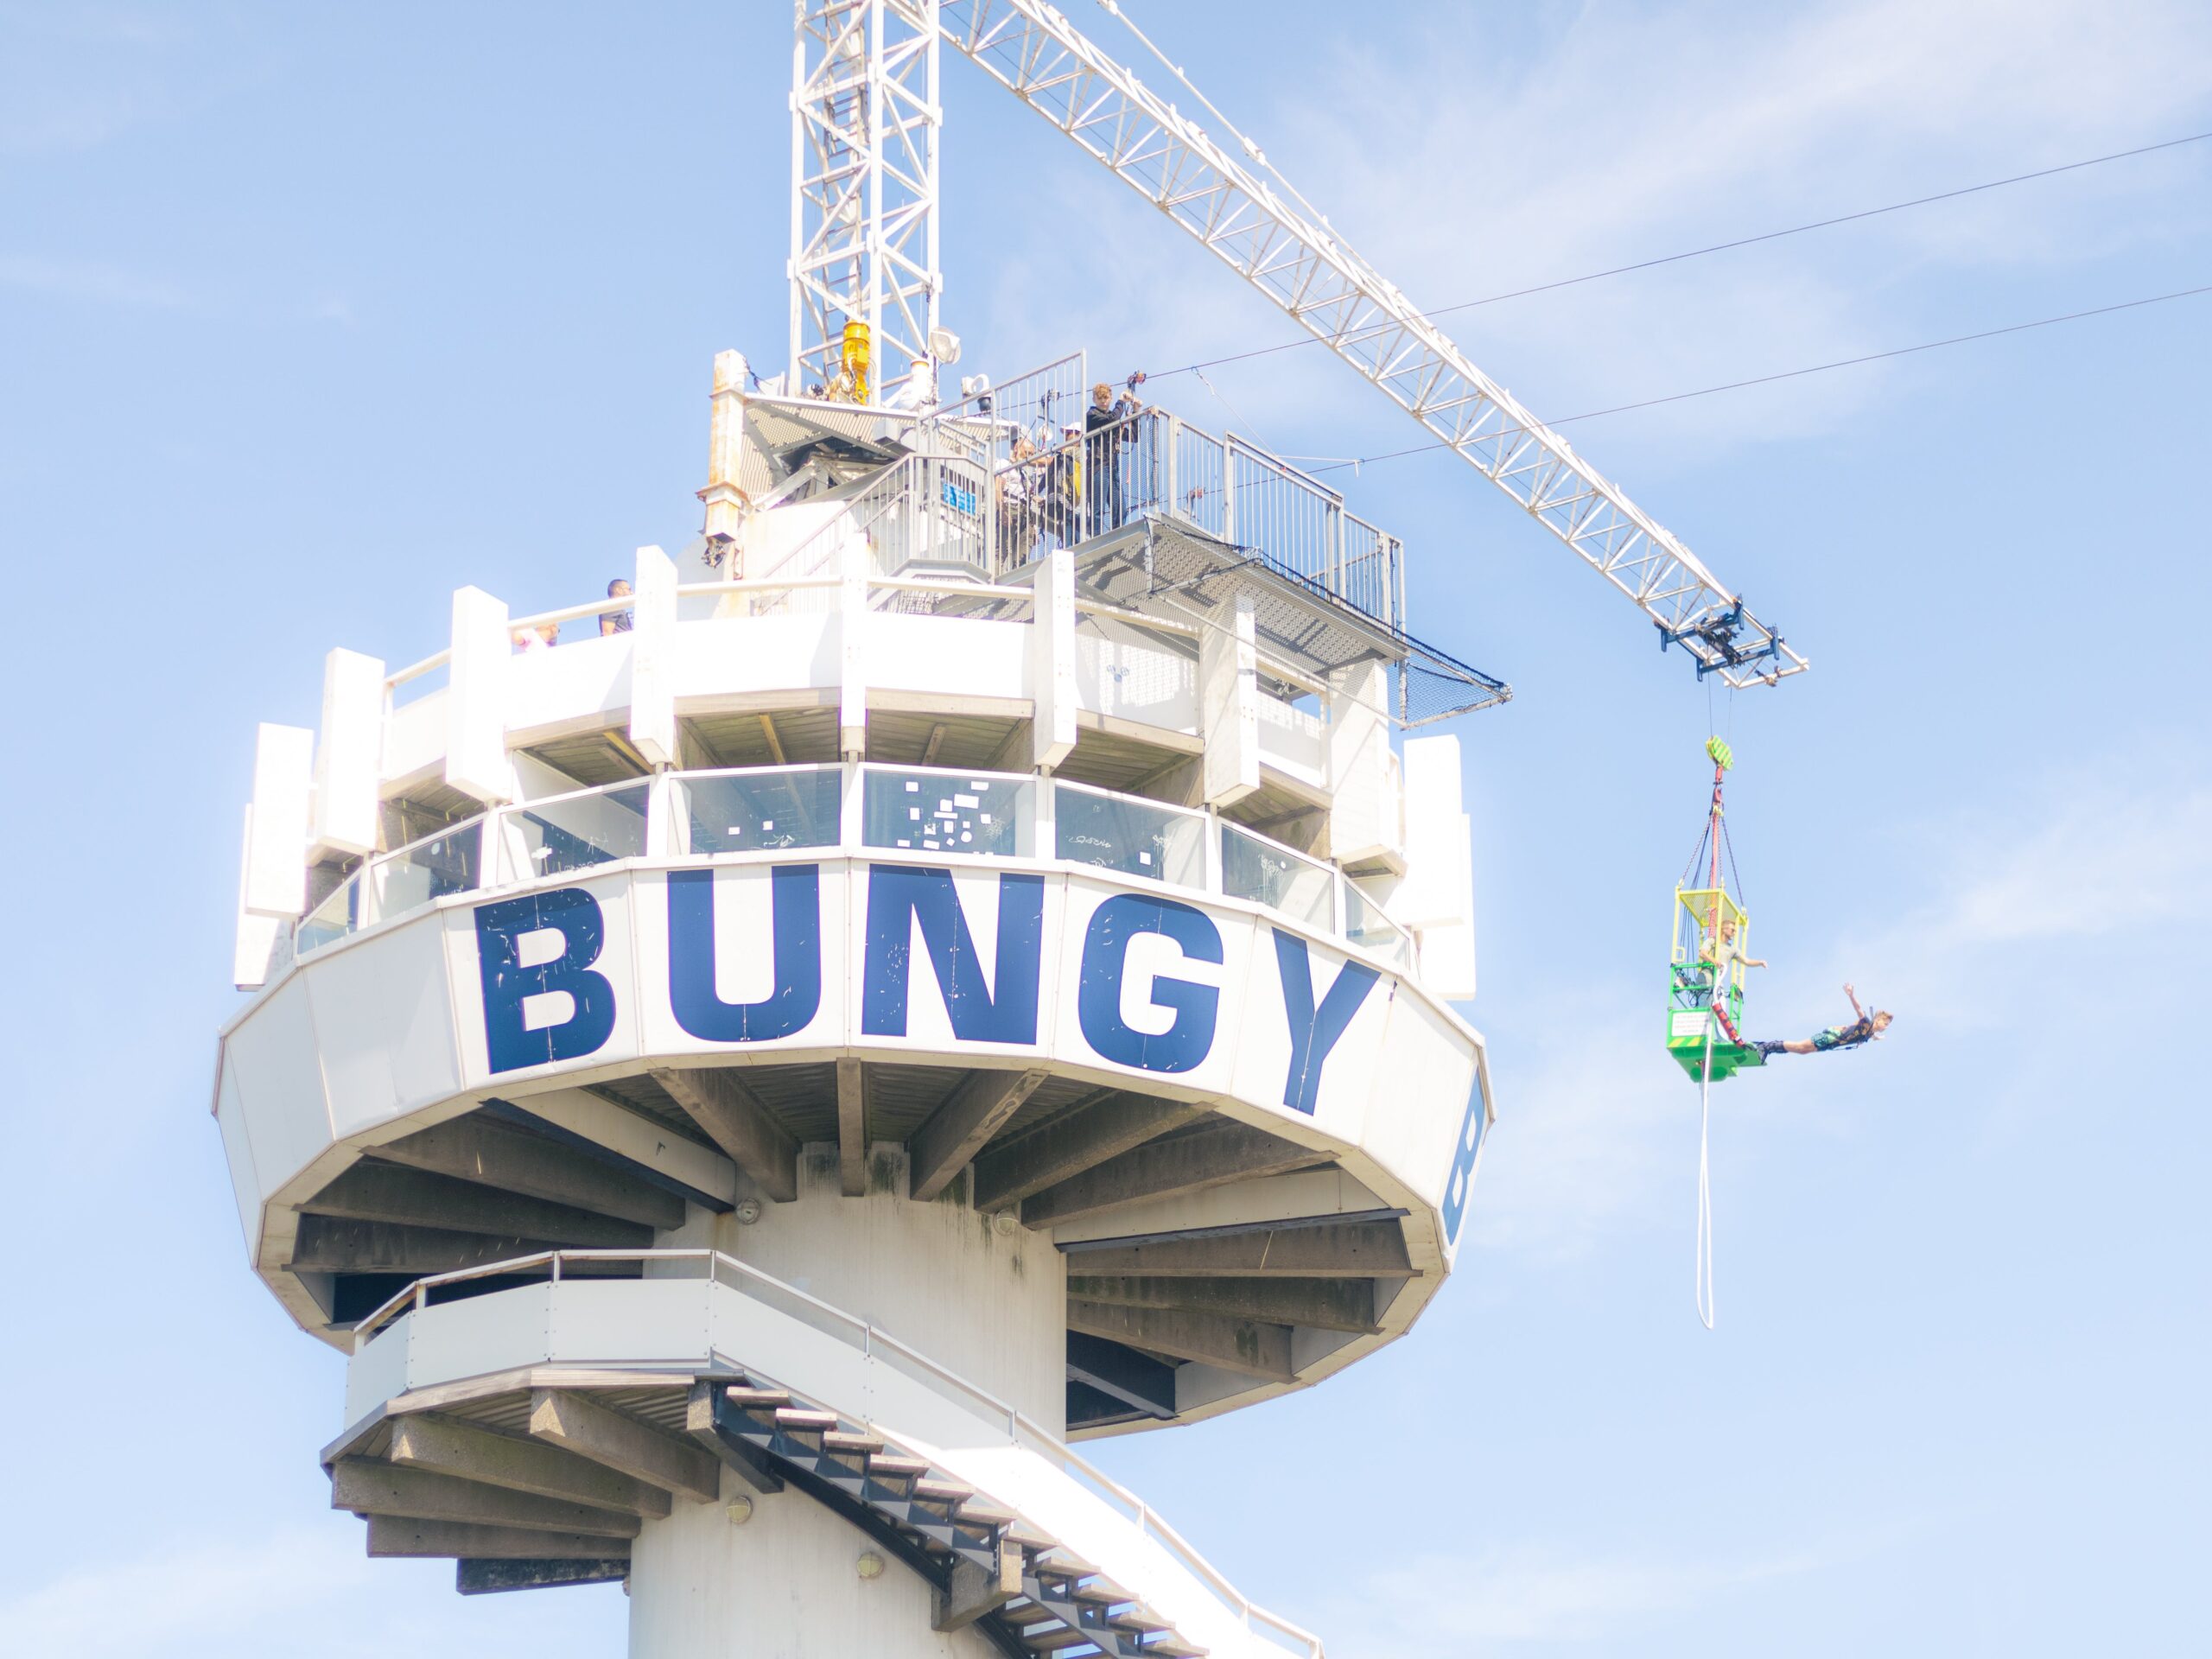 Najbardziej ekscytujące miejsca do bungee jumpingu na świecie